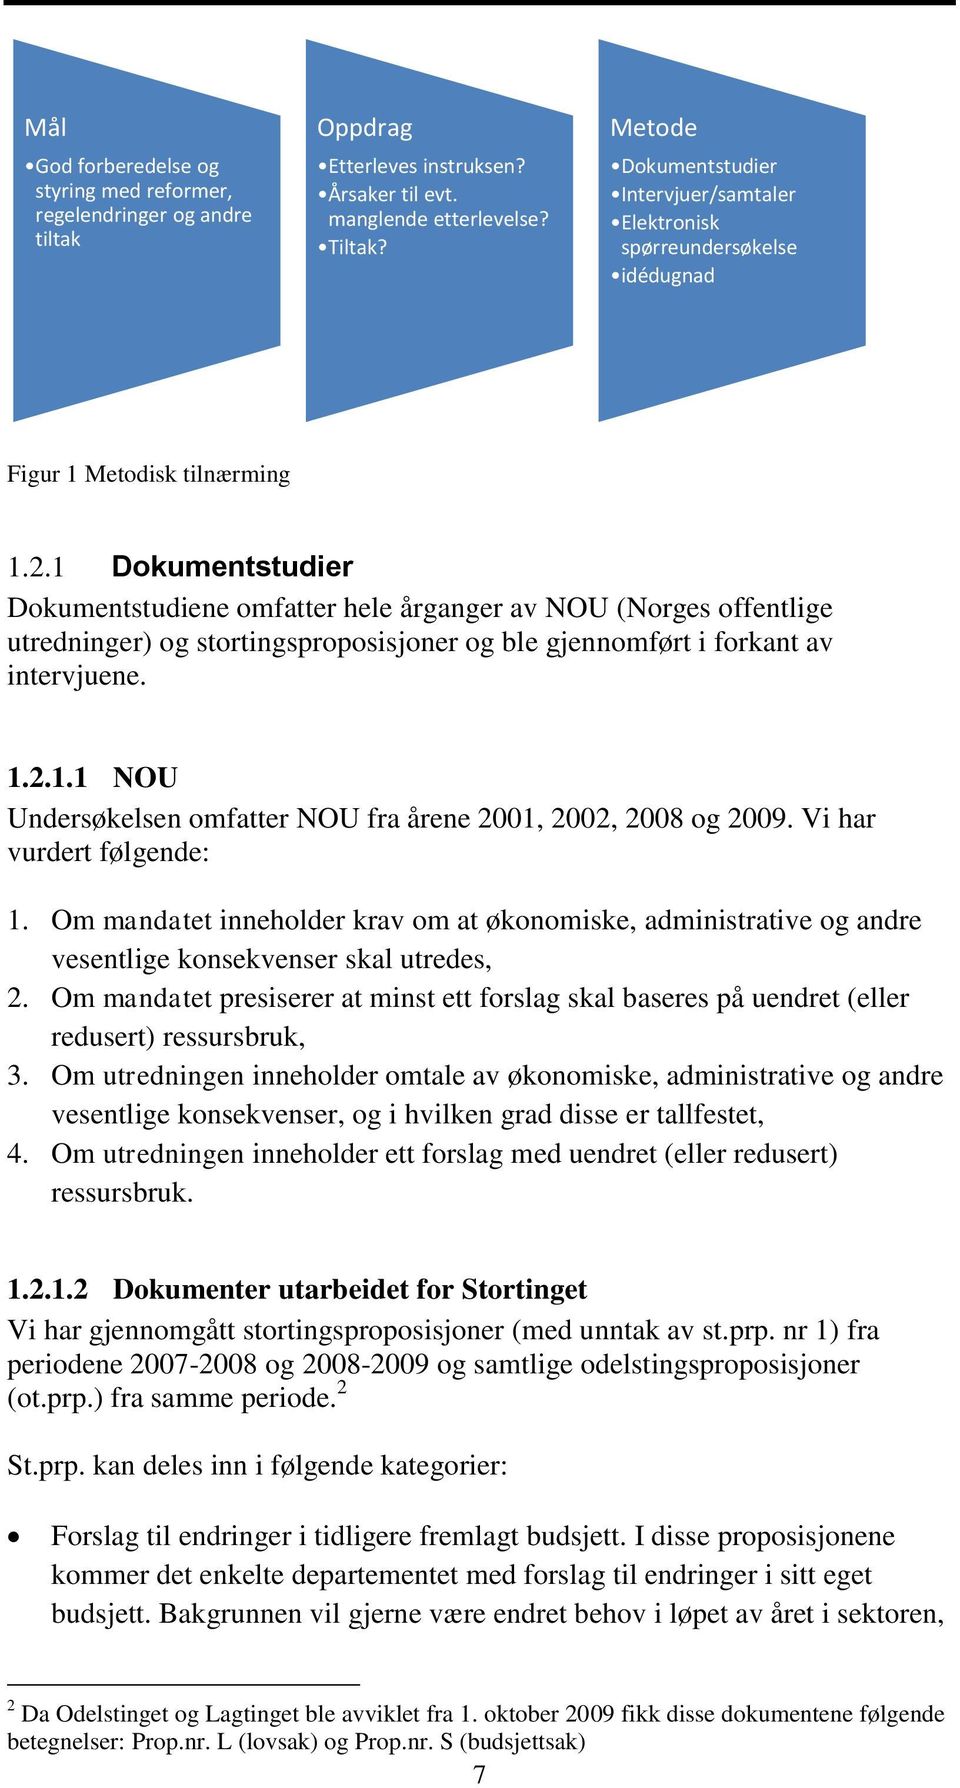 1 Dokumentstudier Dokumentstudiene omfatter hele årganger av NOU (Norges offentlige utredninger) og stortingsproposisjoner og ble gjennomført i forkant av intervjuene. 1.2.1.1 NOU Undersøkelsen omfatter NOU fra årene 2001, 2002, 2008 og 2009.